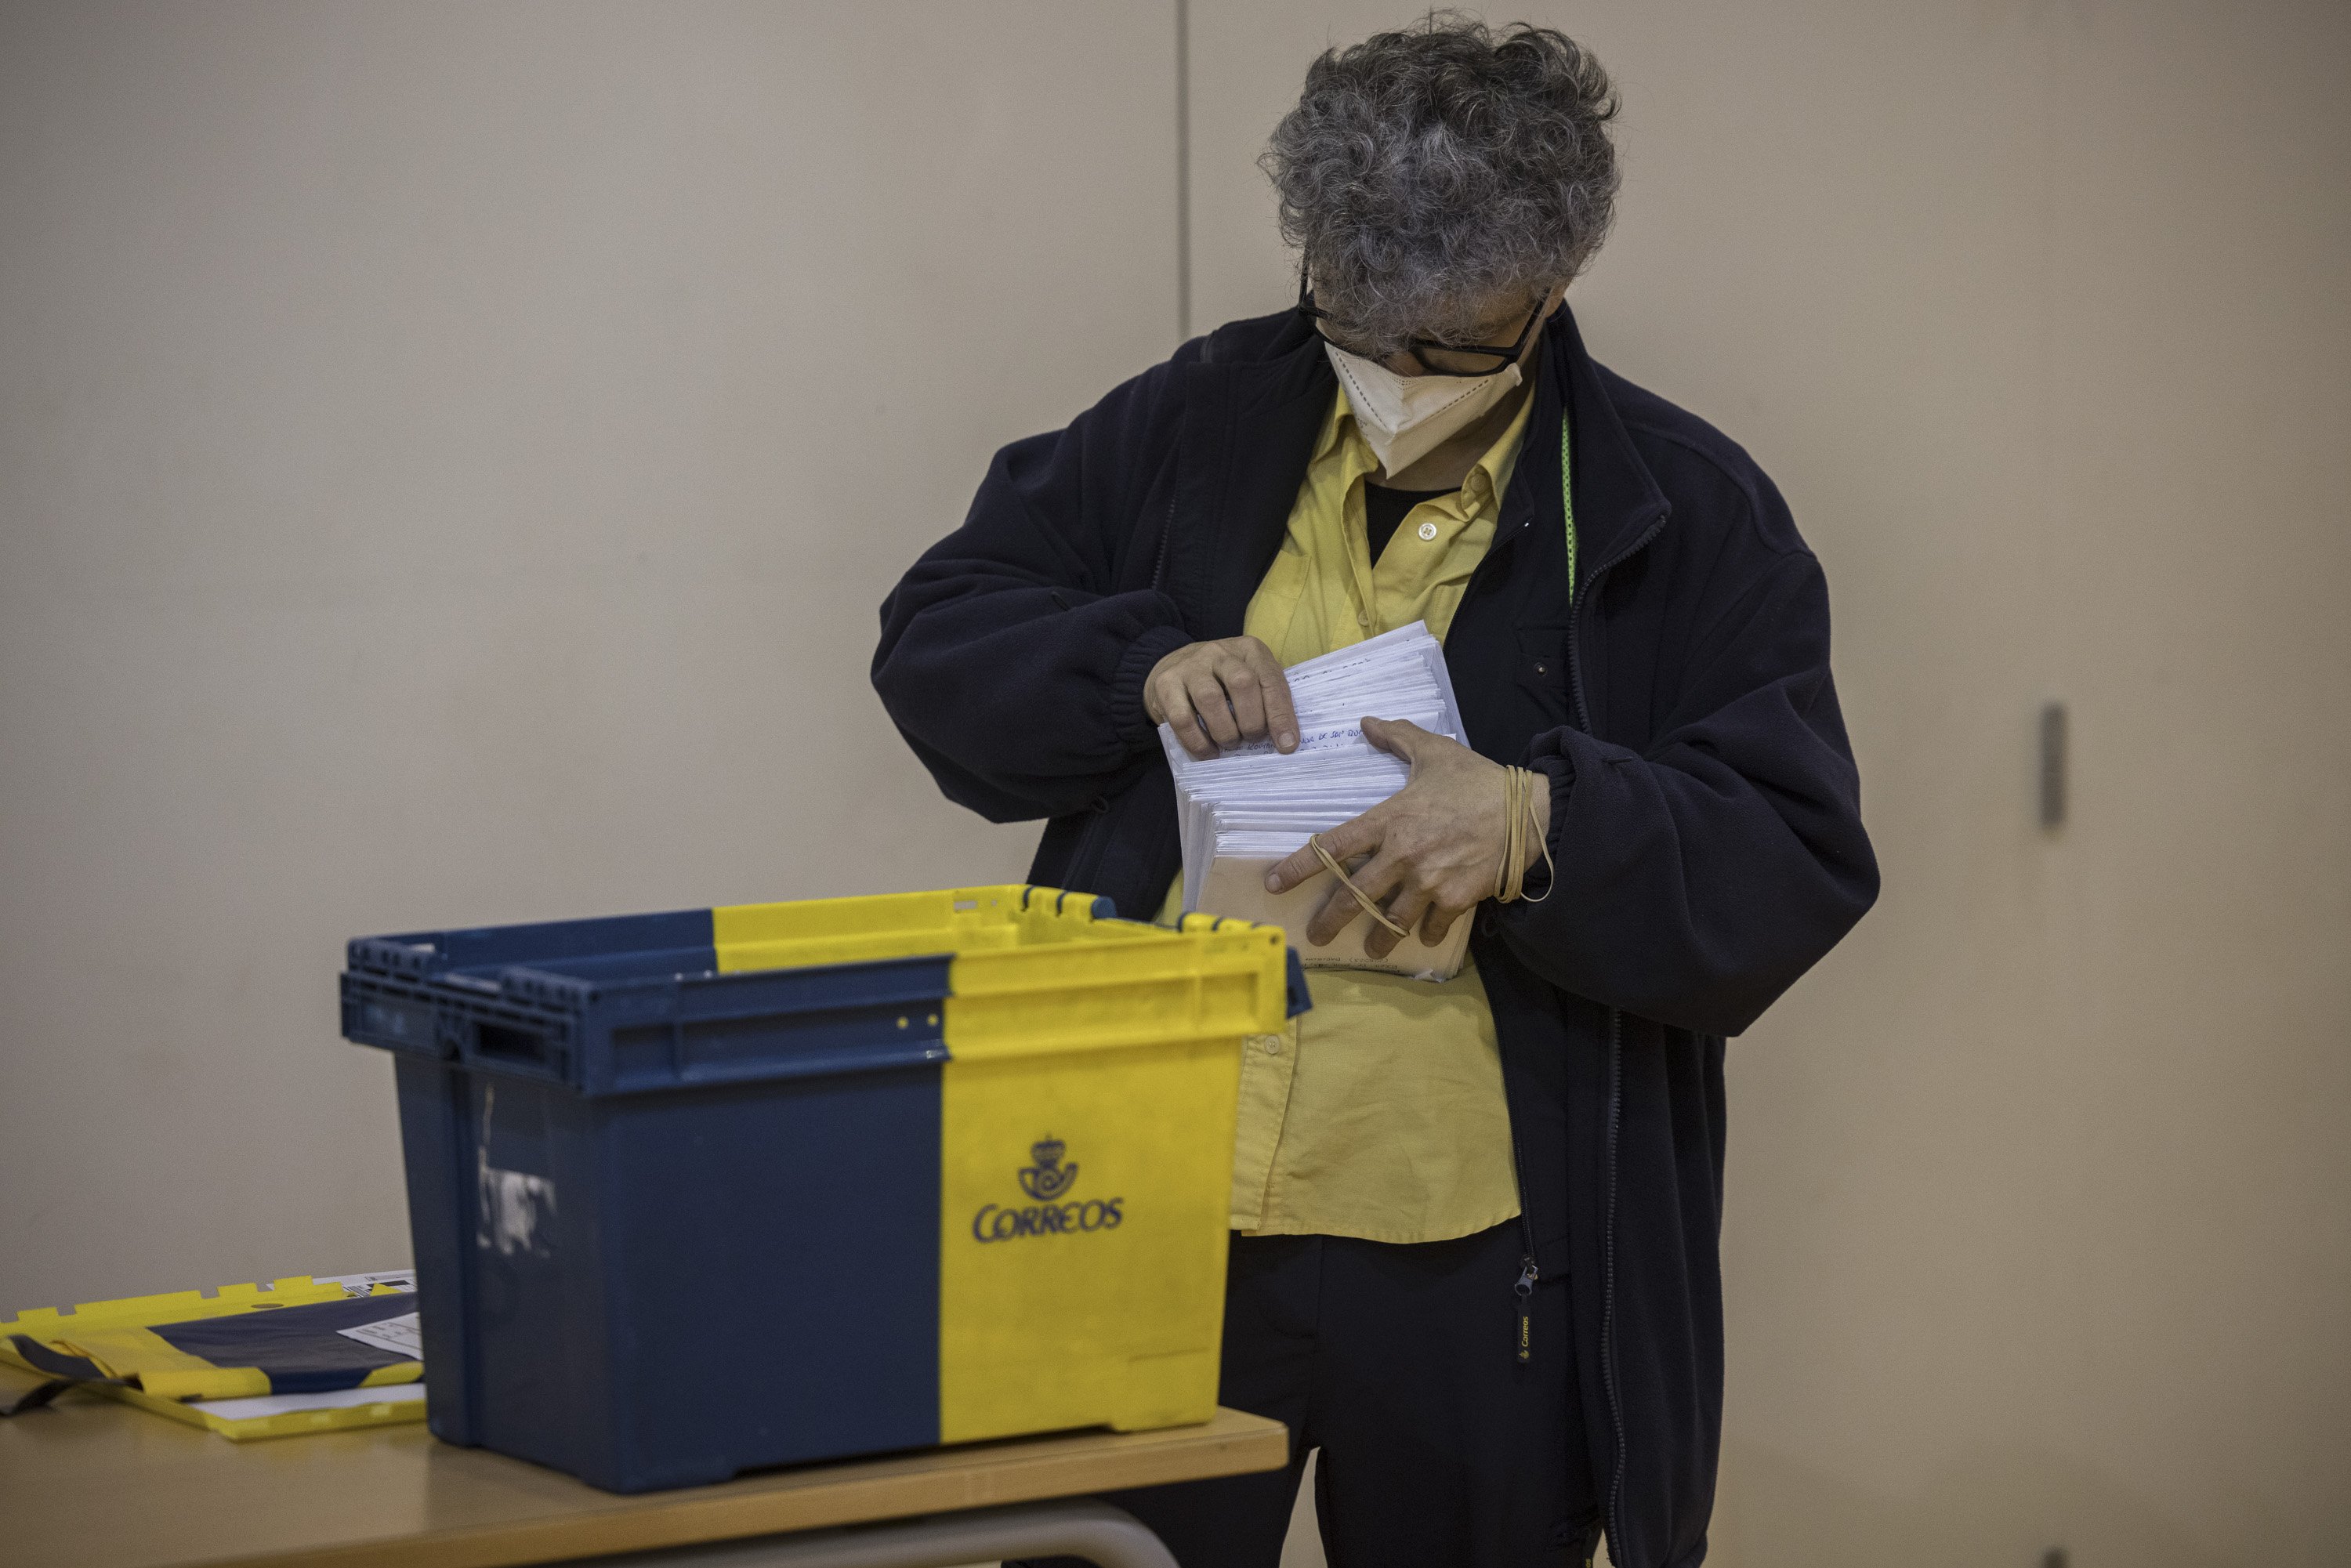 Elecciones 14-F Votaciones Colegio electoral mesa Covid-19 coronavirus correos correus por correo Escola Univers - Sergi Alcazar